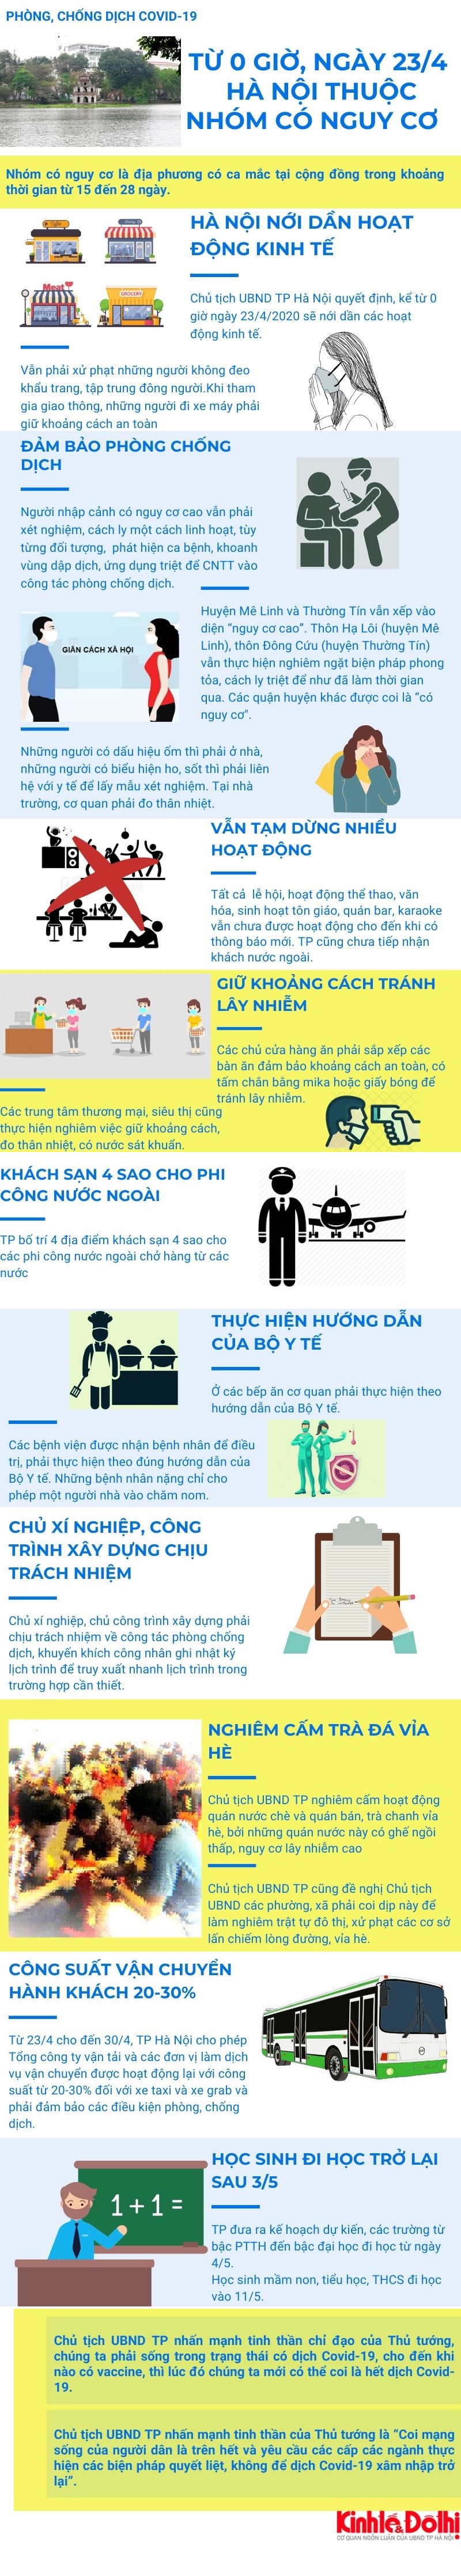 [Infographic] Chi tiết các hoạt động phòng, chống dịch Covid-19 của Hà Nội từ 0 giờ ngày 23/4 - Ảnh 1